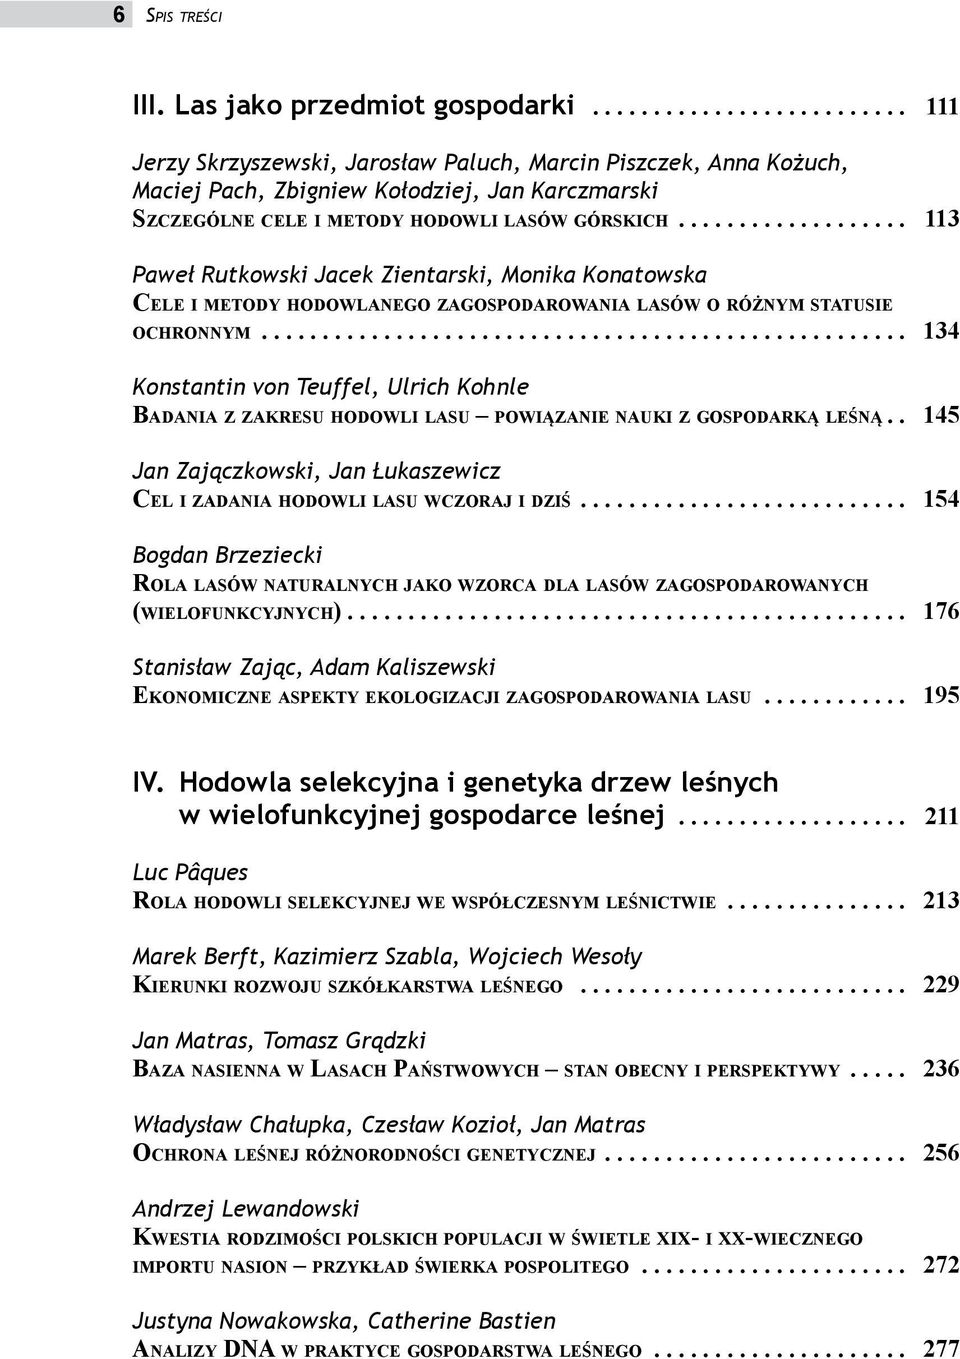 .................. 113 Paweł Rutkowski Jacek Zientarski, Monika Konatowska Cele i metody hodowlanego zagospodarowania lasów o różnym statusie ochronnym.